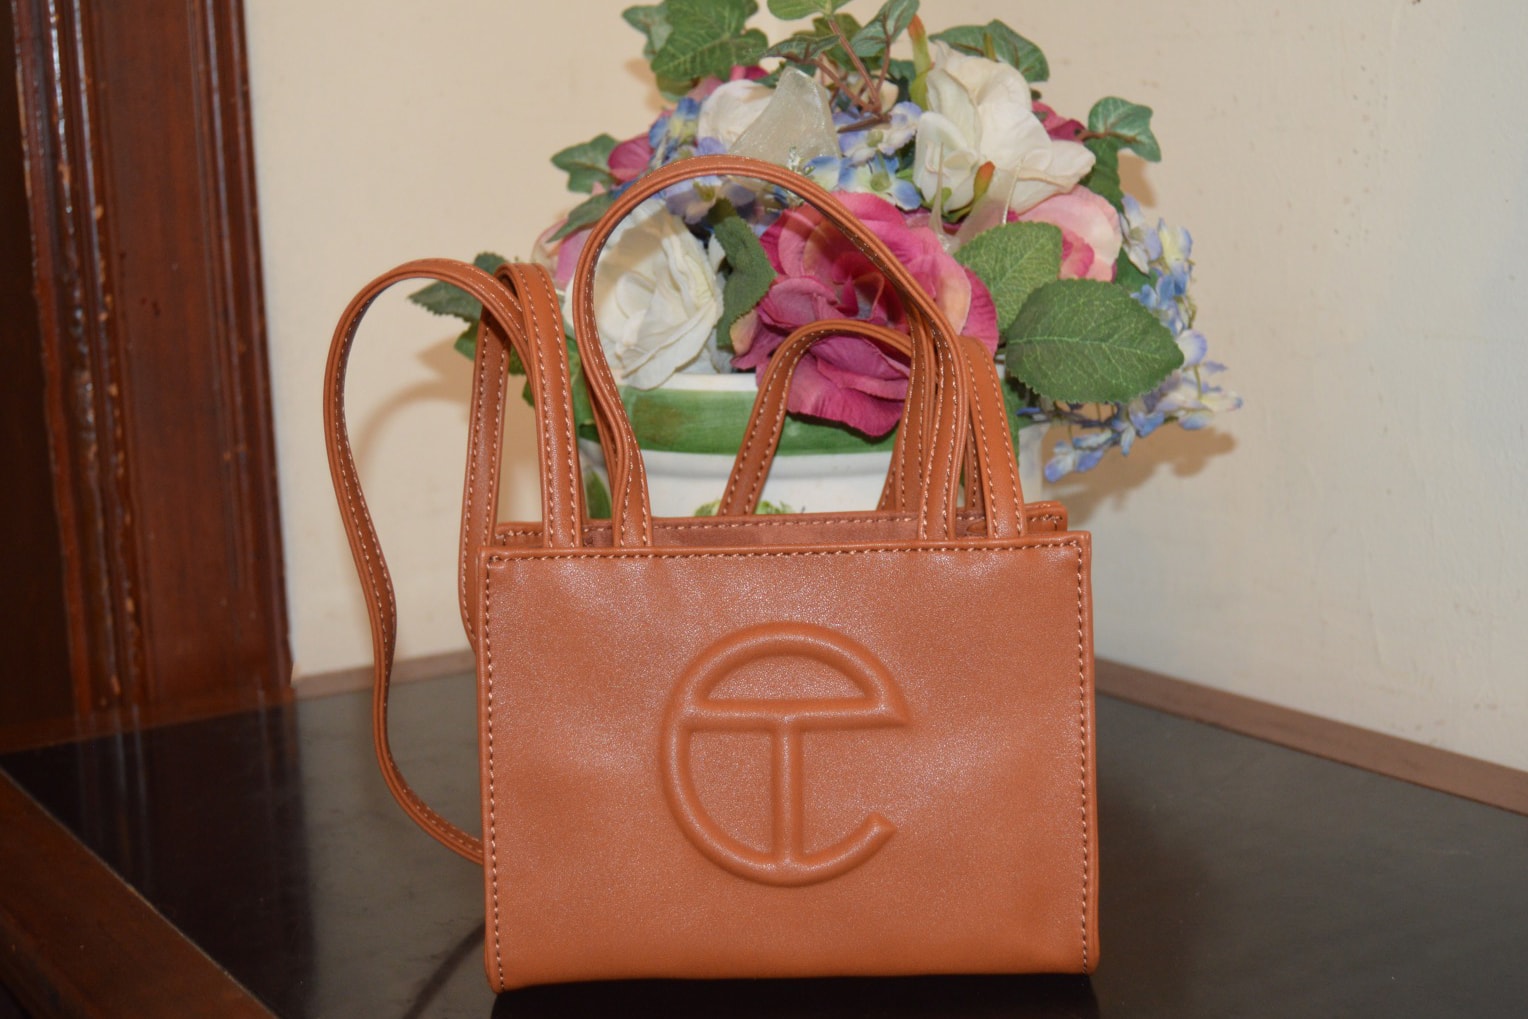 Telfar Small Shopping Bag Tan